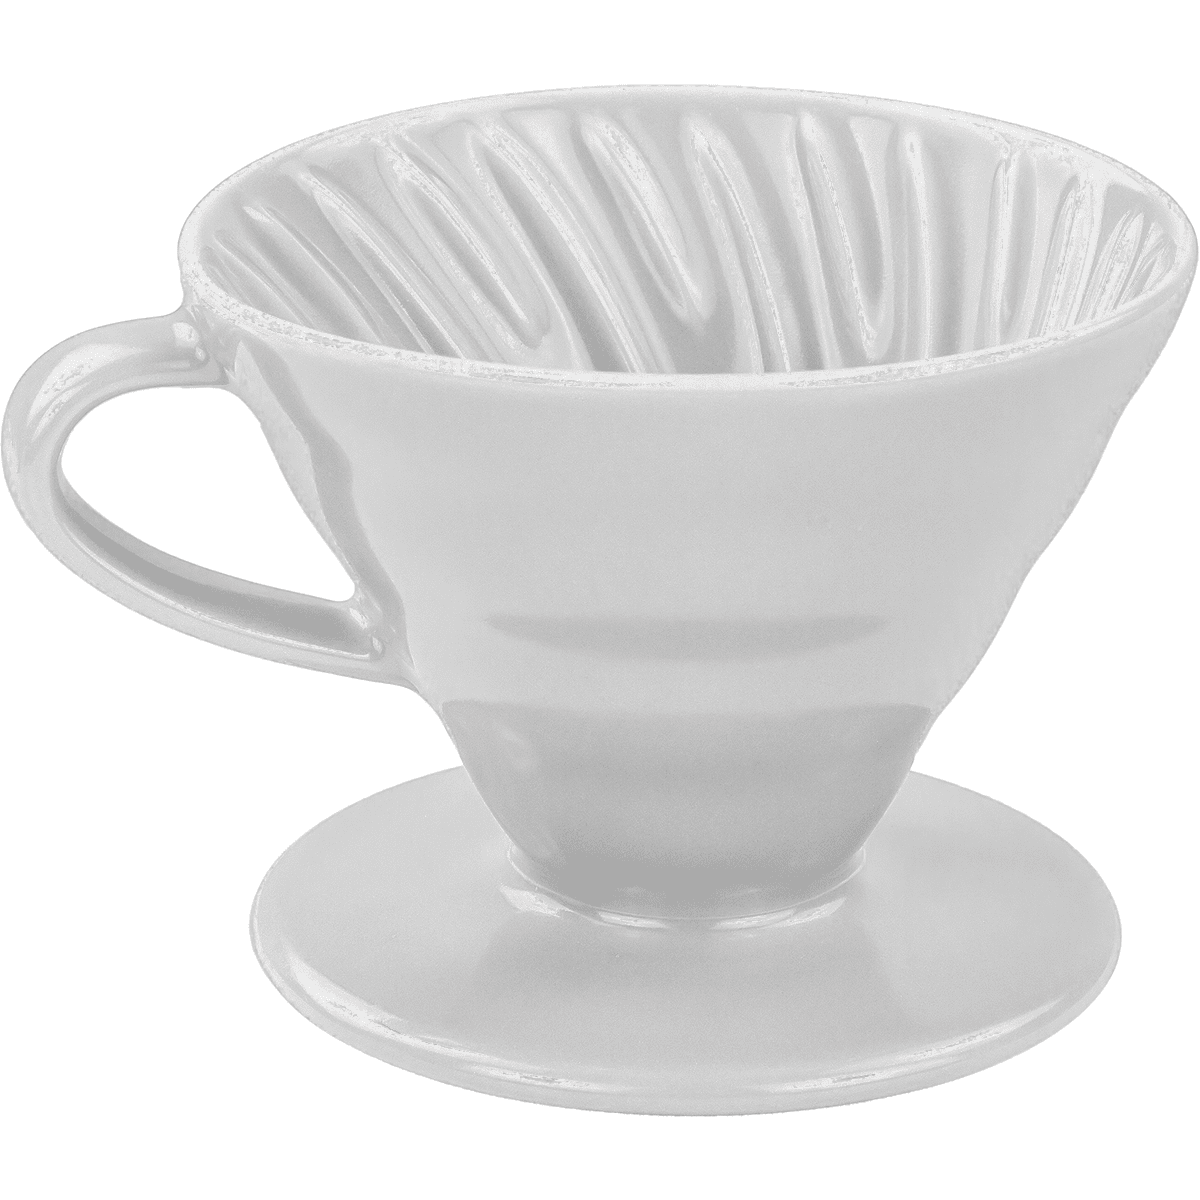 Hario V60 Ceramic Coffee Dripper - White